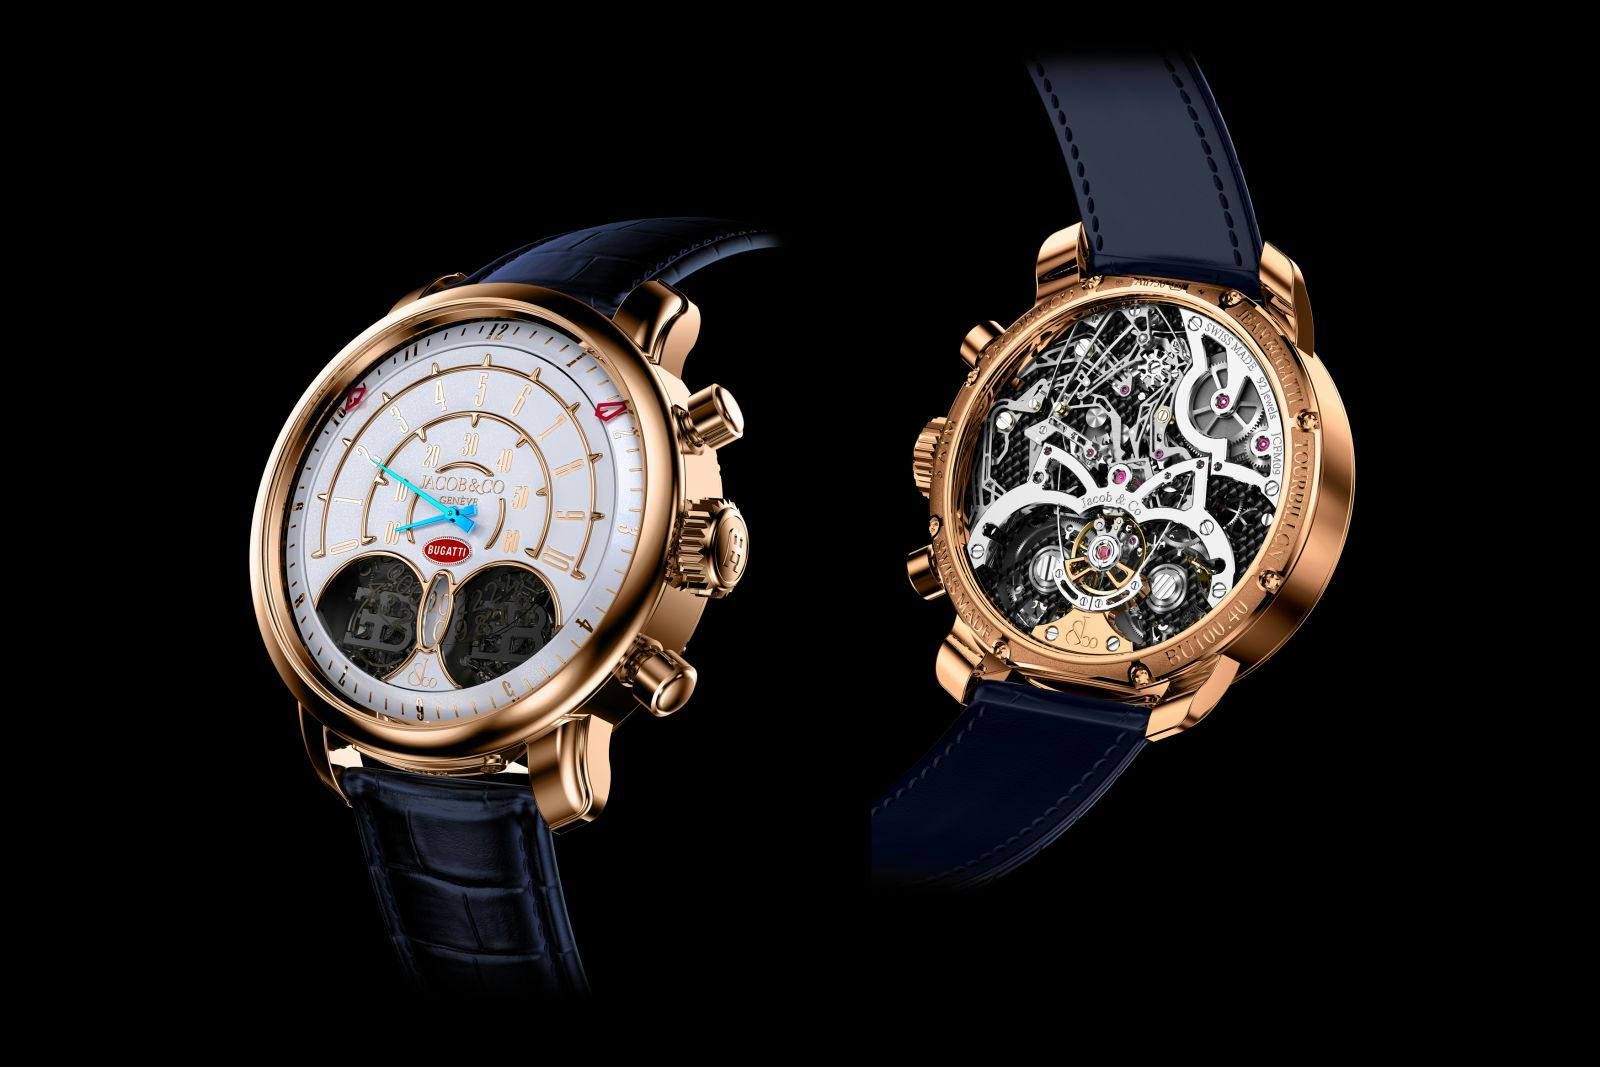 Die Jean Bugatti Uhr ist die neueste Kreation aus der Zusammenarbeit von Bugatti und Jacob & Co.